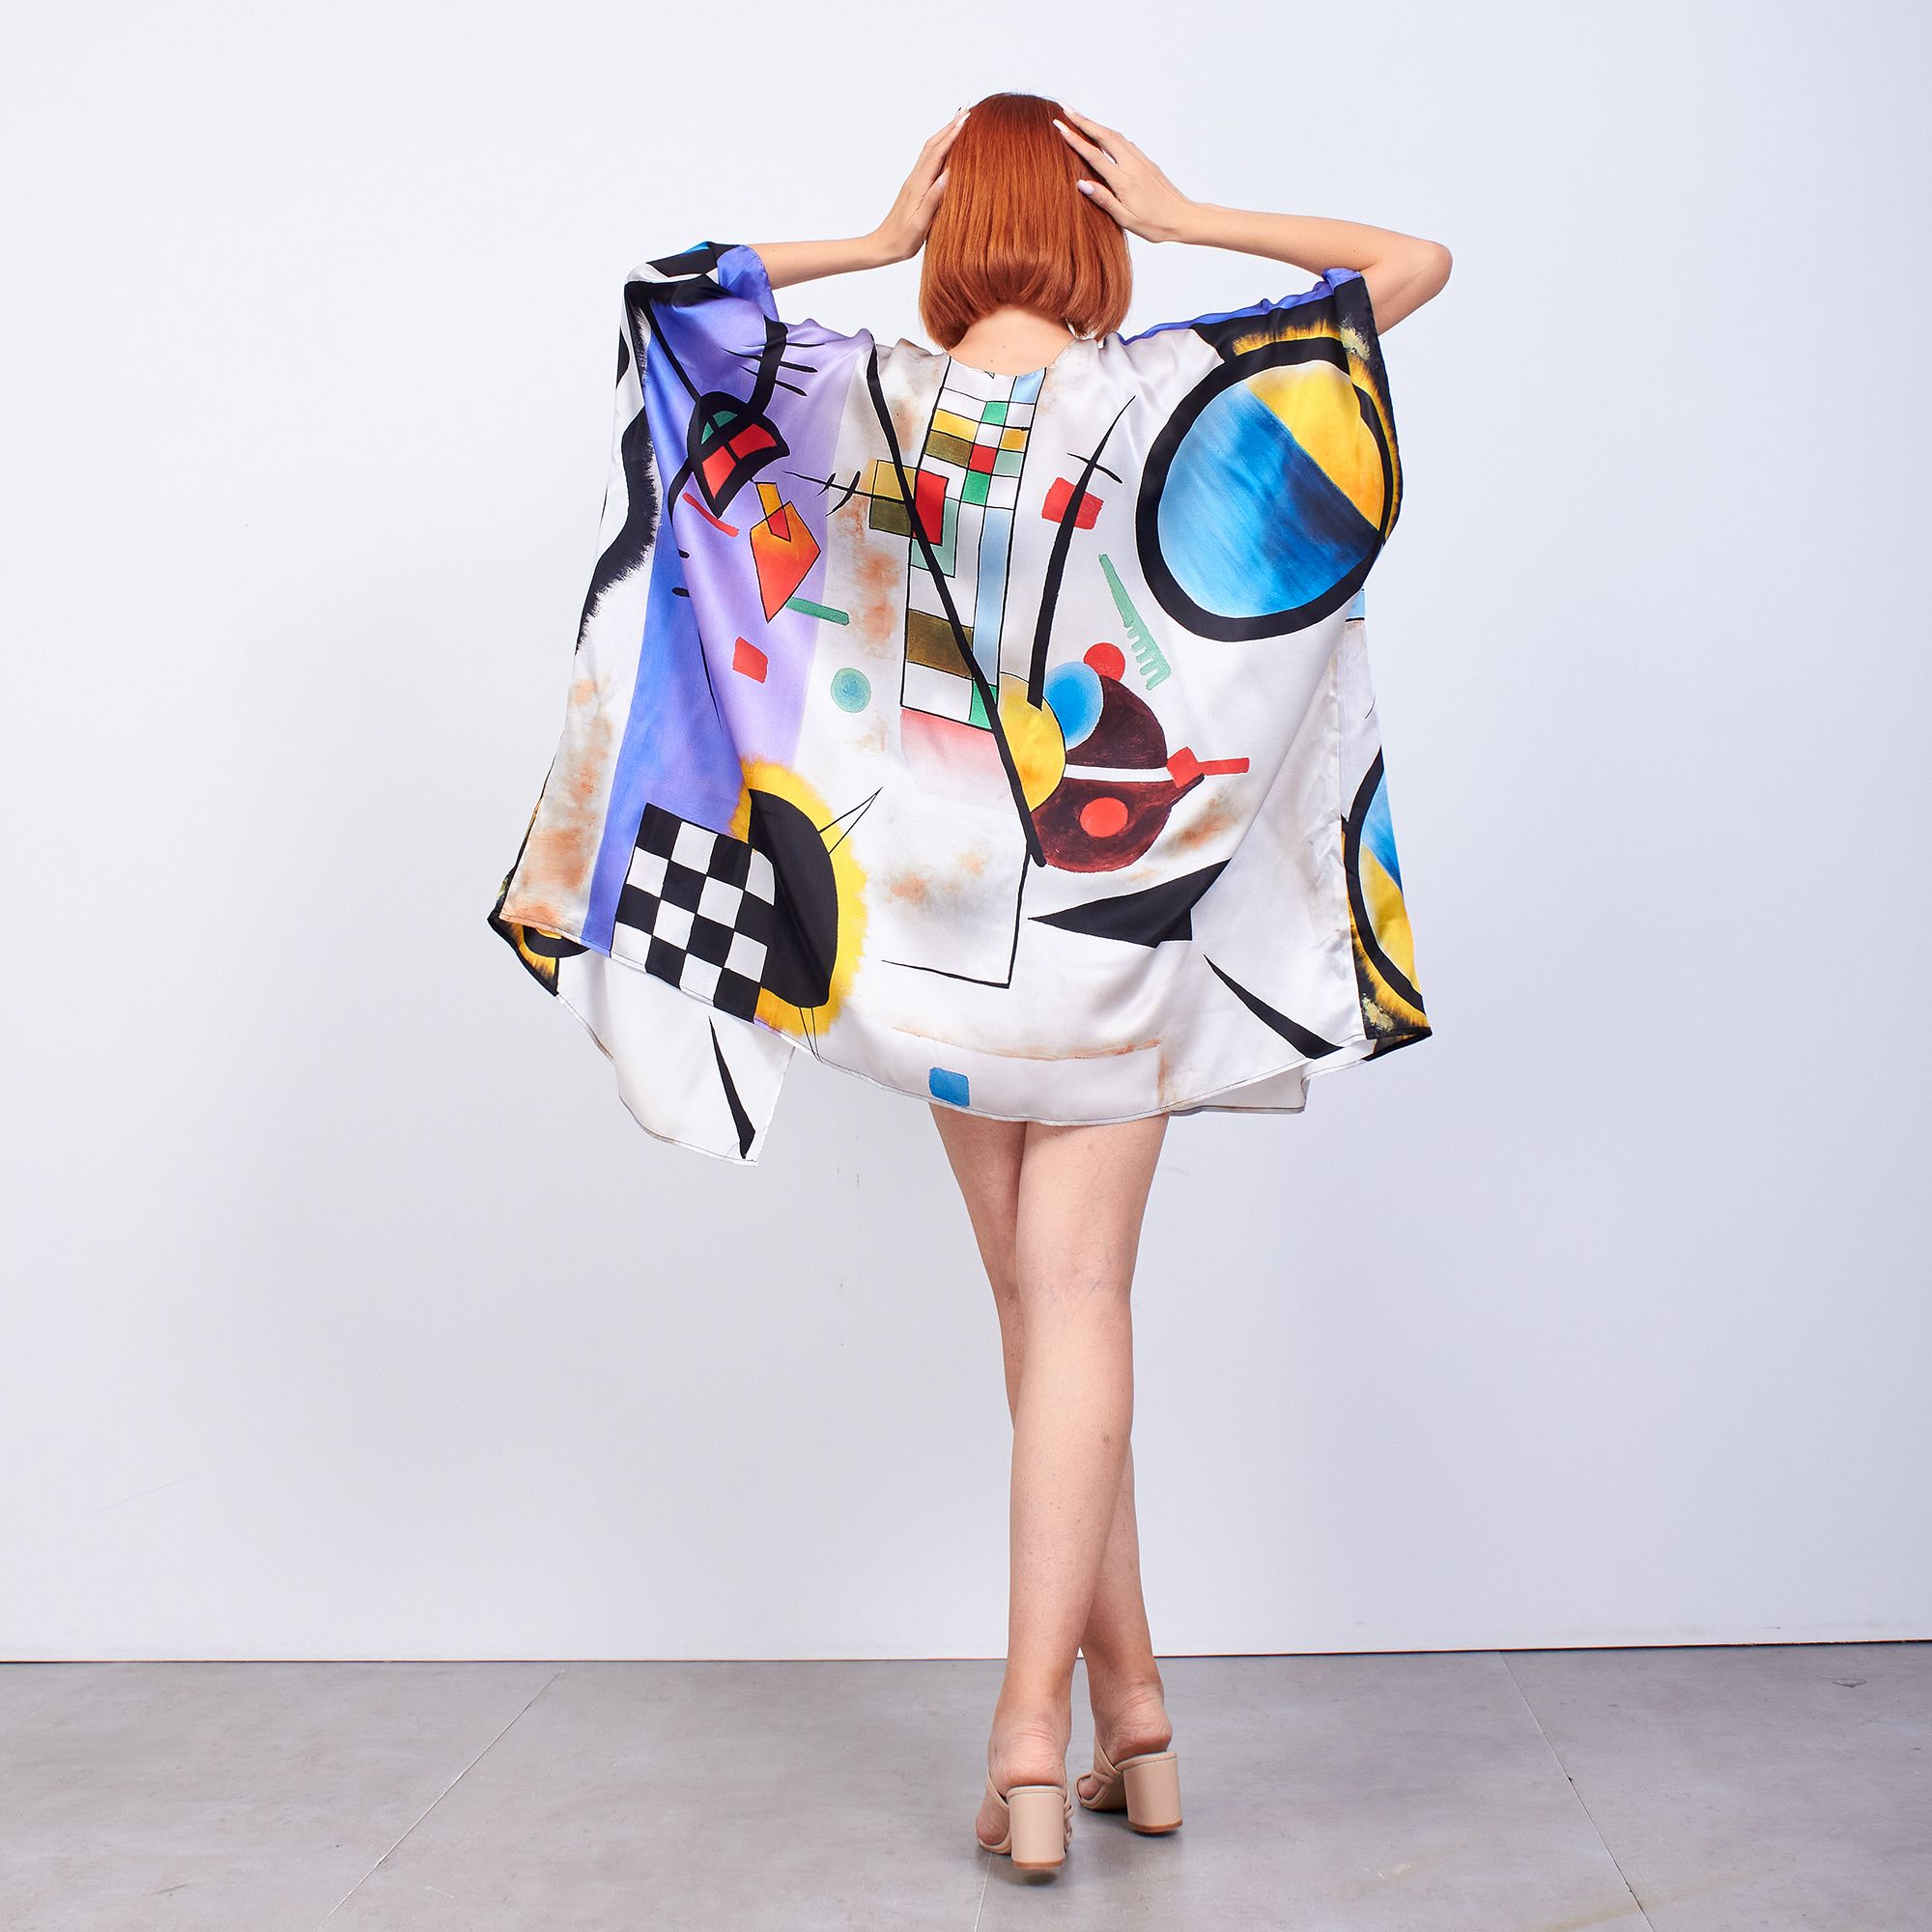 ألبسة كيمونو حريري ١٠٠٪؜ قصير "وشاح للشاطئ" | Kandinsky Collective